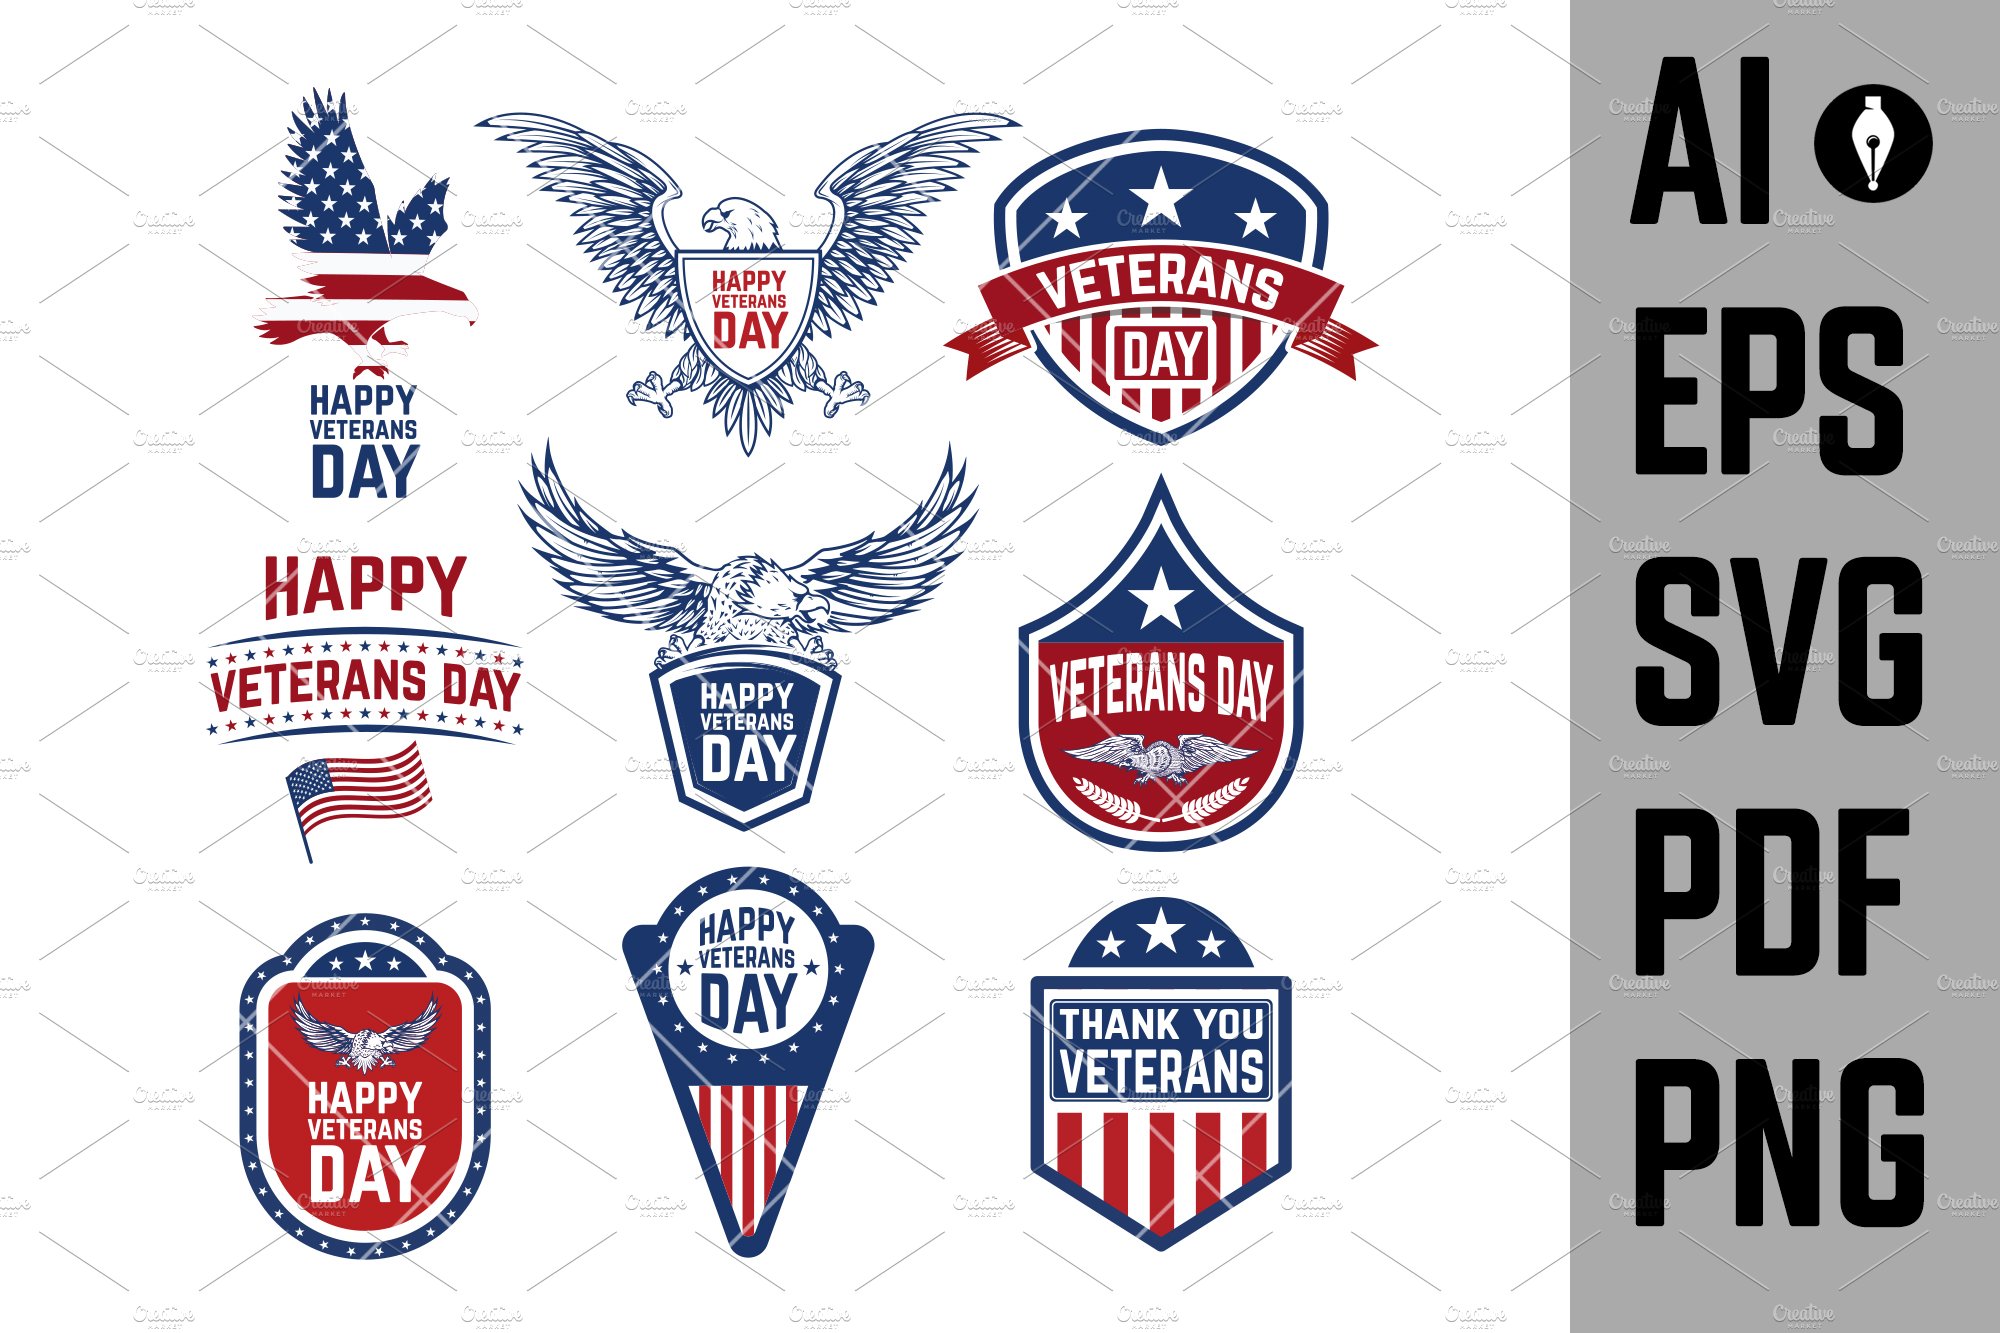 Cool set of veterans symbols.